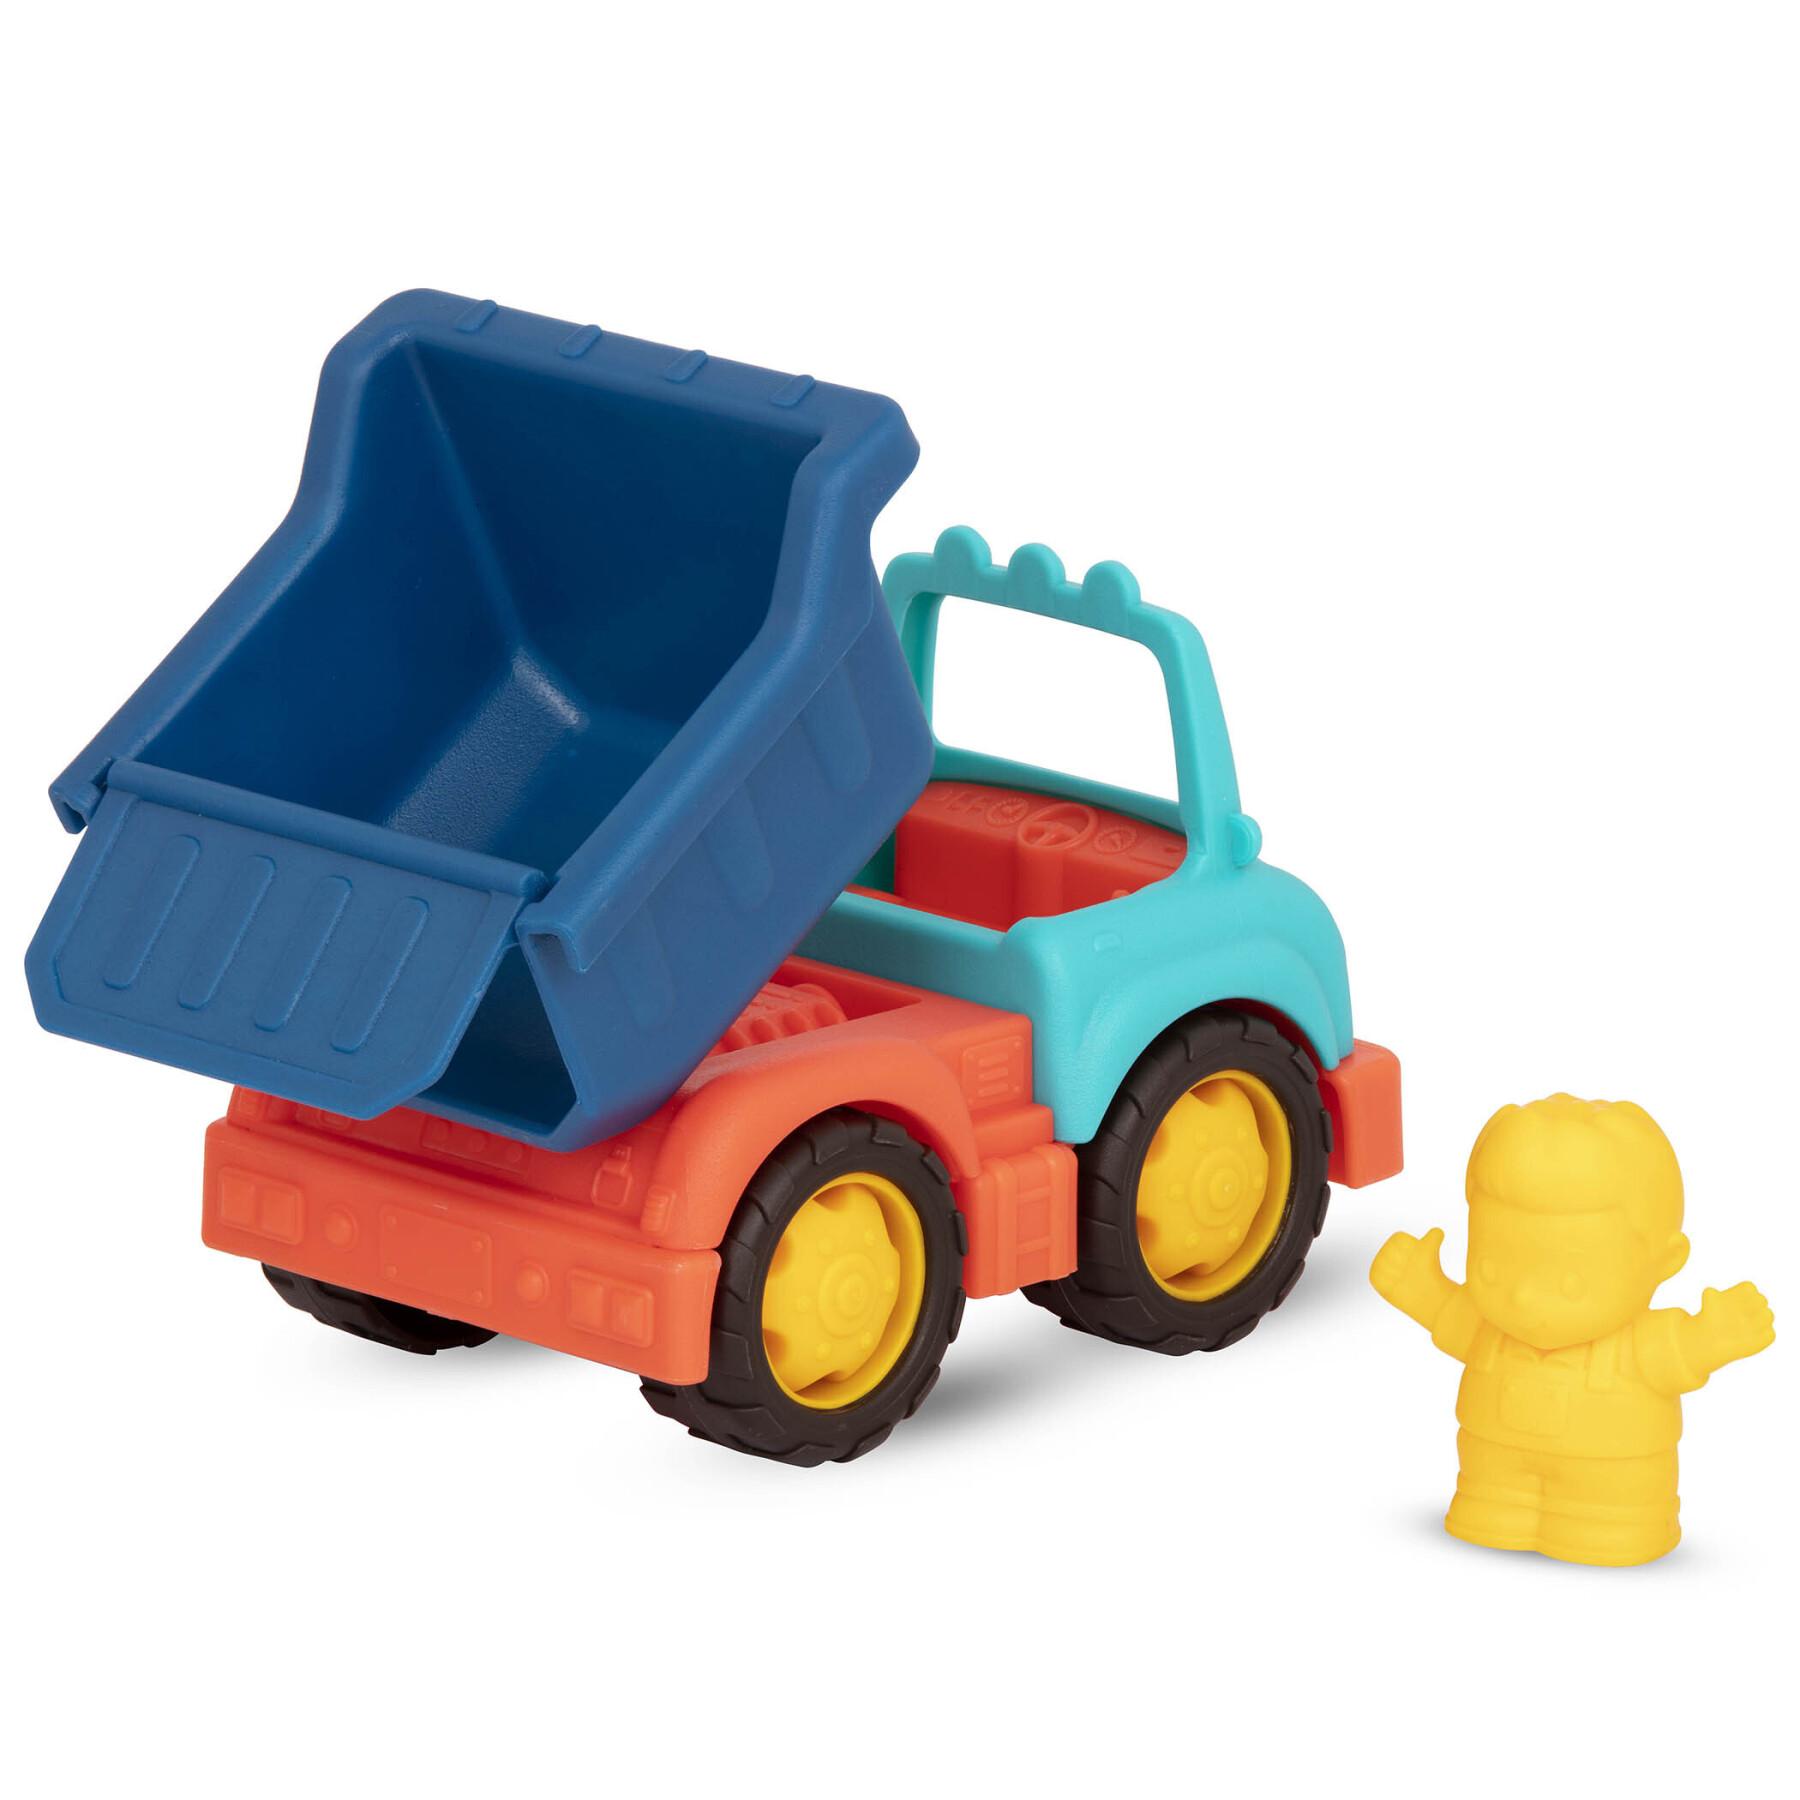 Conjunto de 3 mini camiões de construção com figuras Petit Jour Happy Cruisers